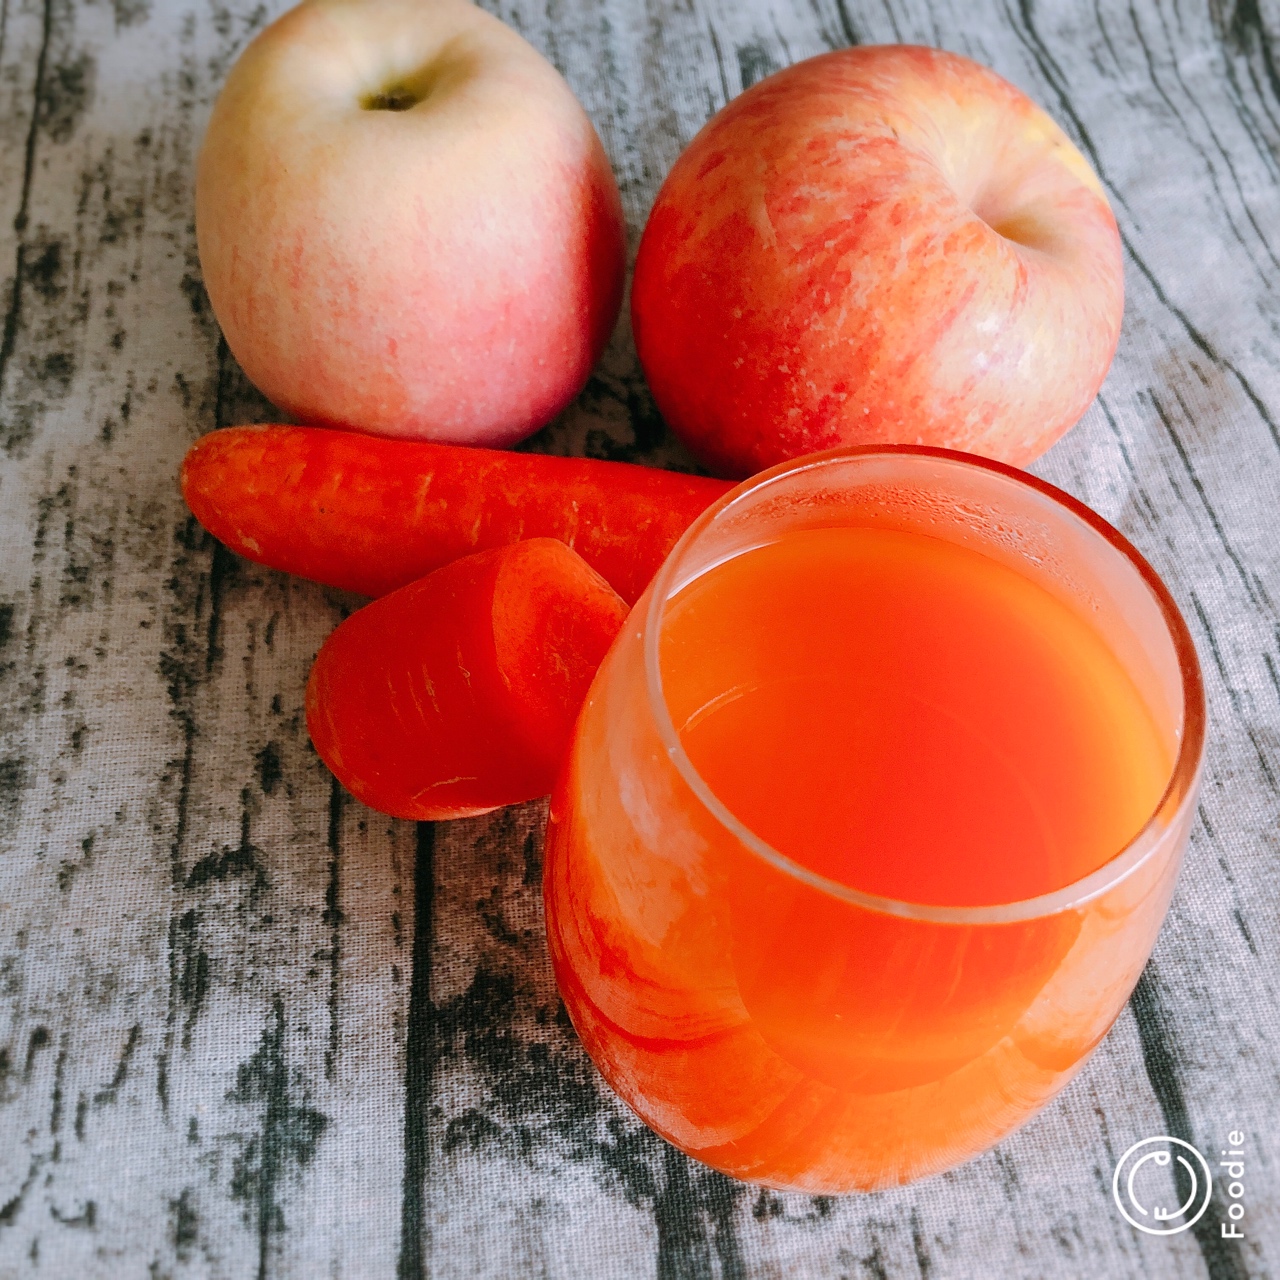 简单菜鸟做的夏季冷饮:苹果胡萝卜汁